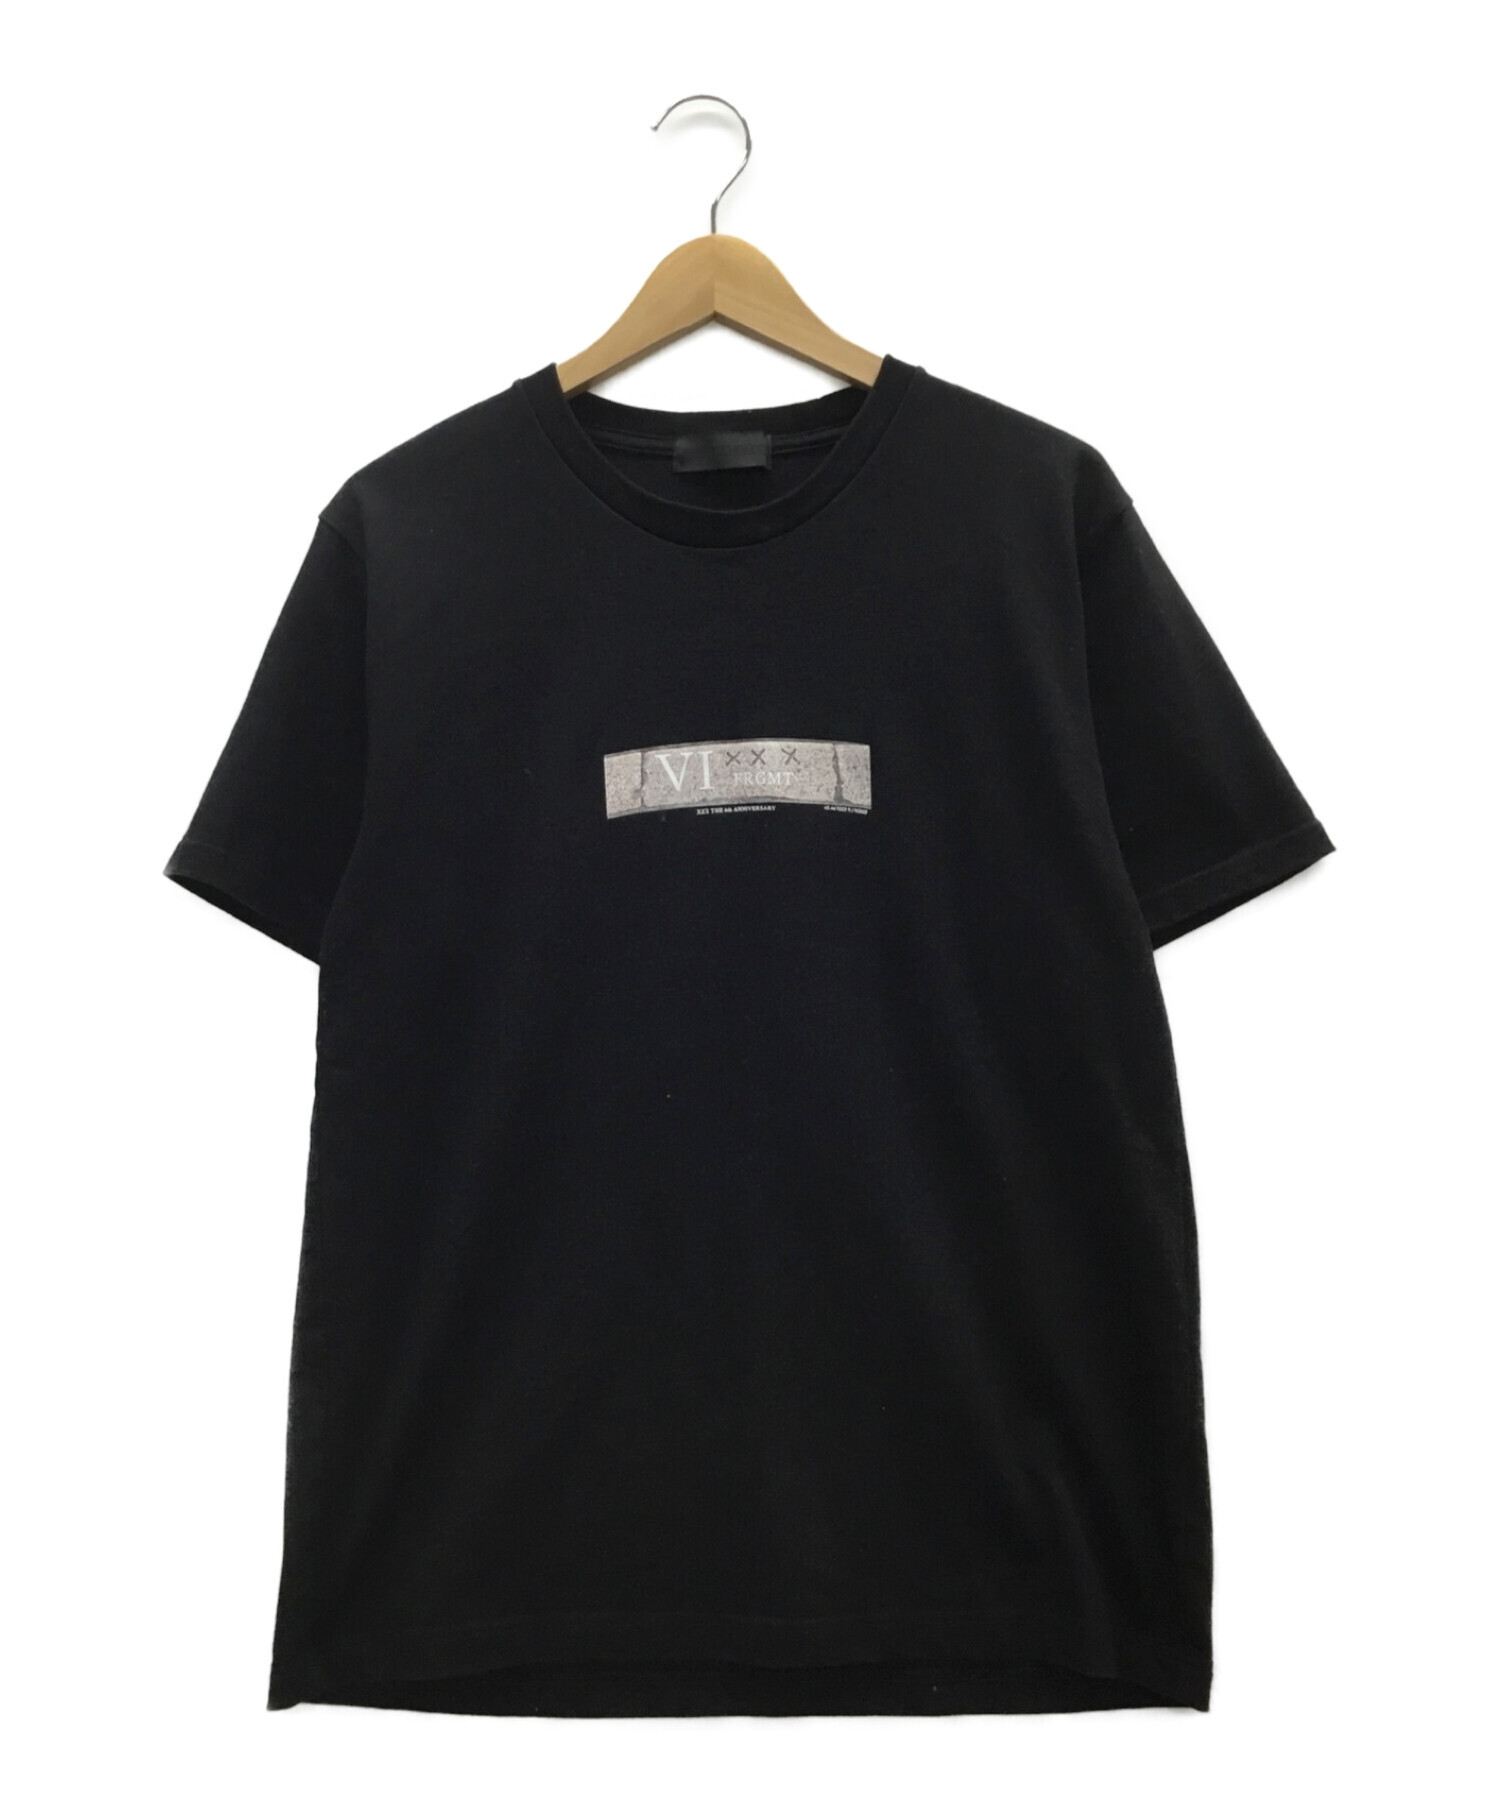 GOD SELECTION XXX (ゴットセレクショントリプルエックス) Tシャツ ブラック サイズ:M